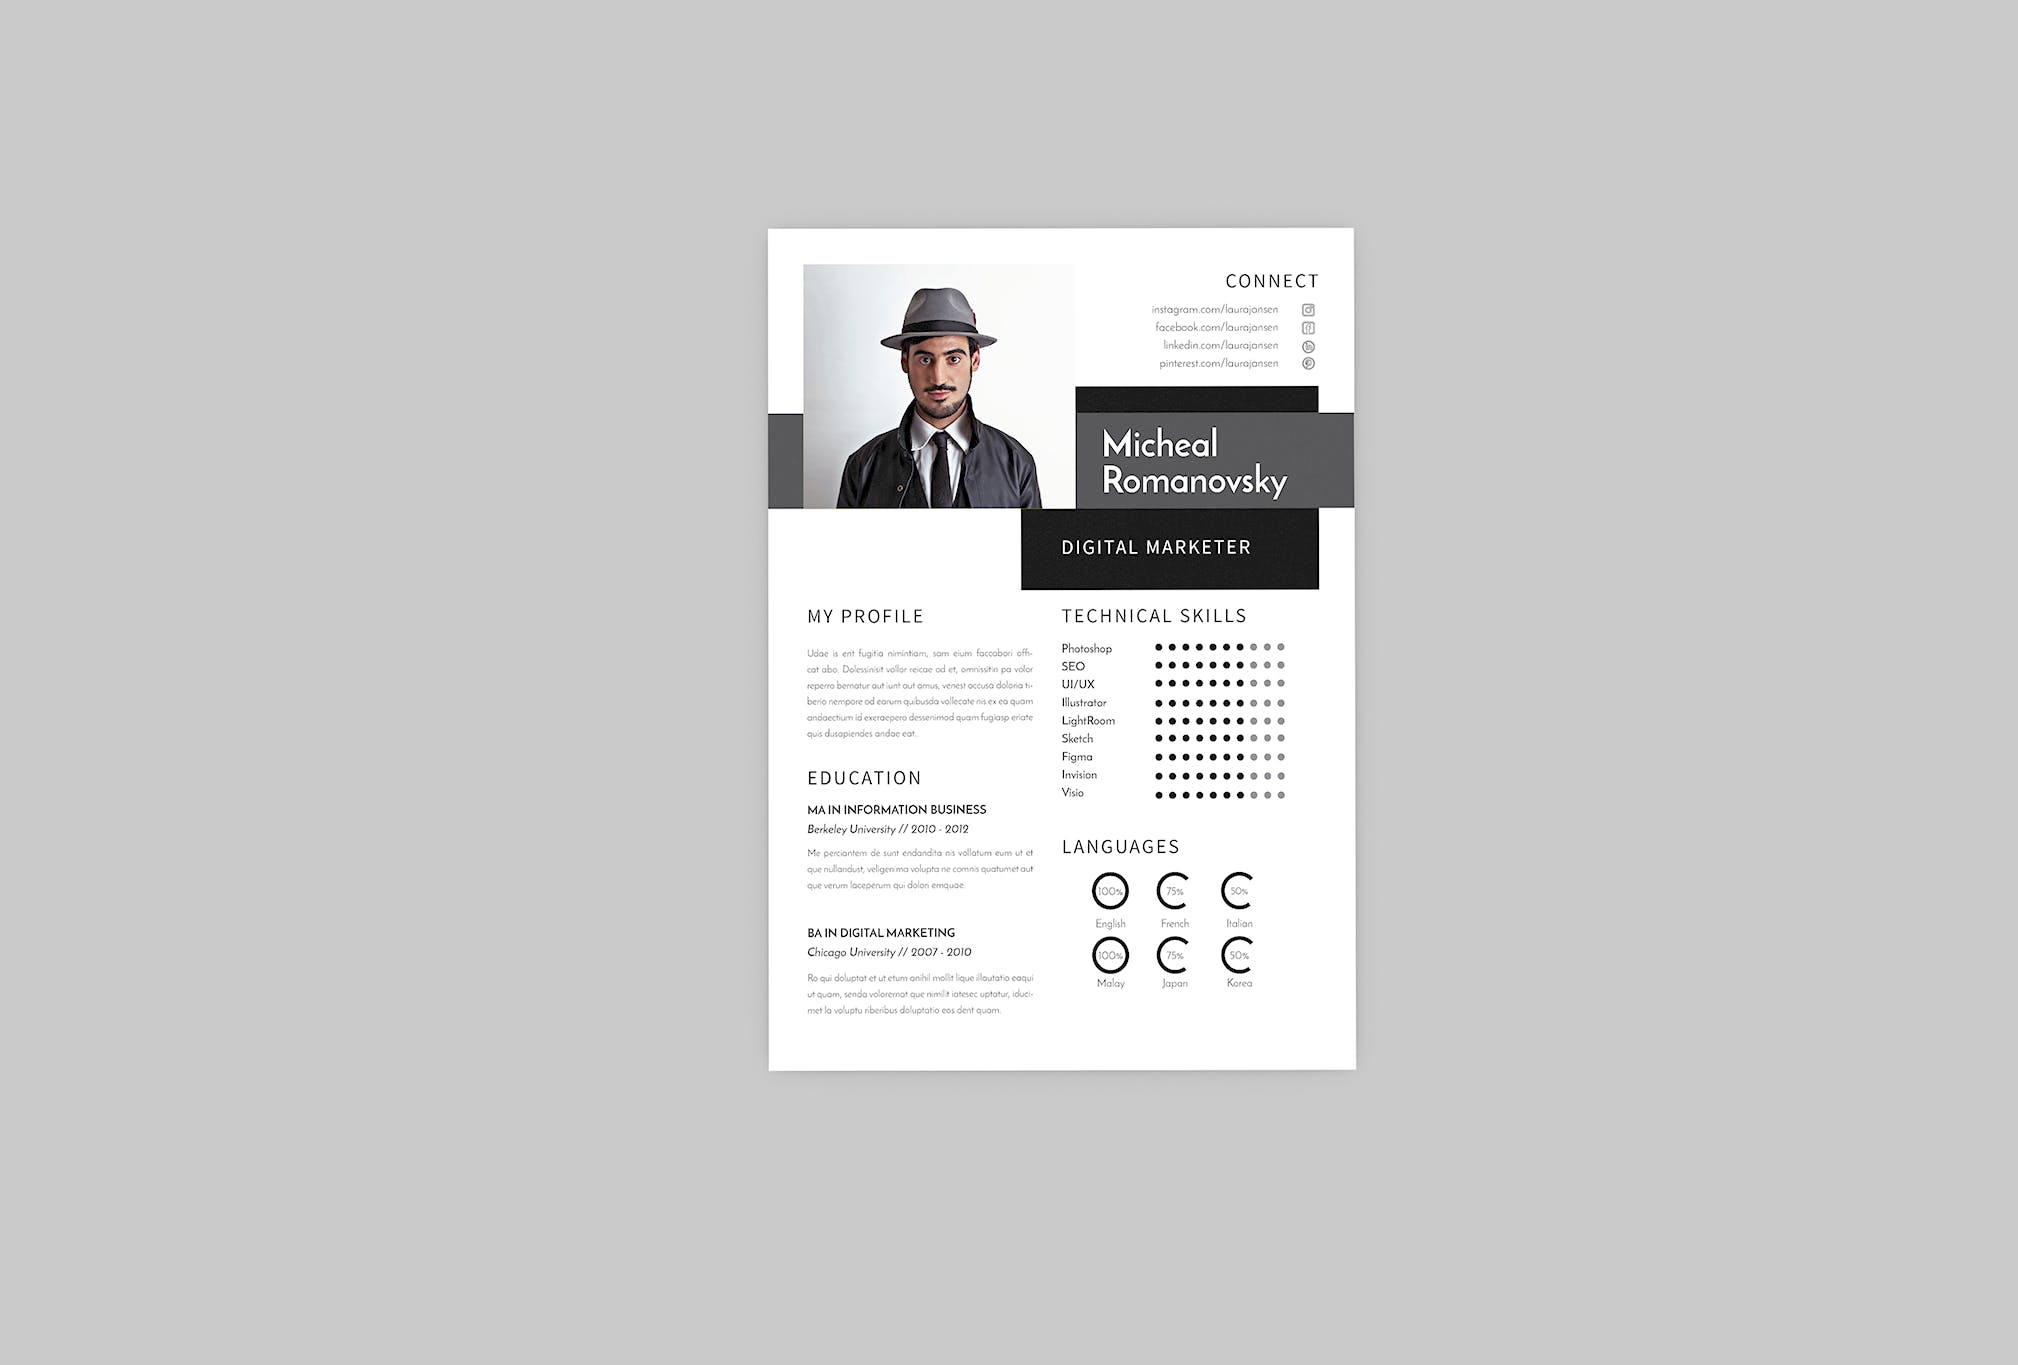 数字营销经理蚂蚁素材精选简历模板 Micheal DIgital Resume Designer插图(2)